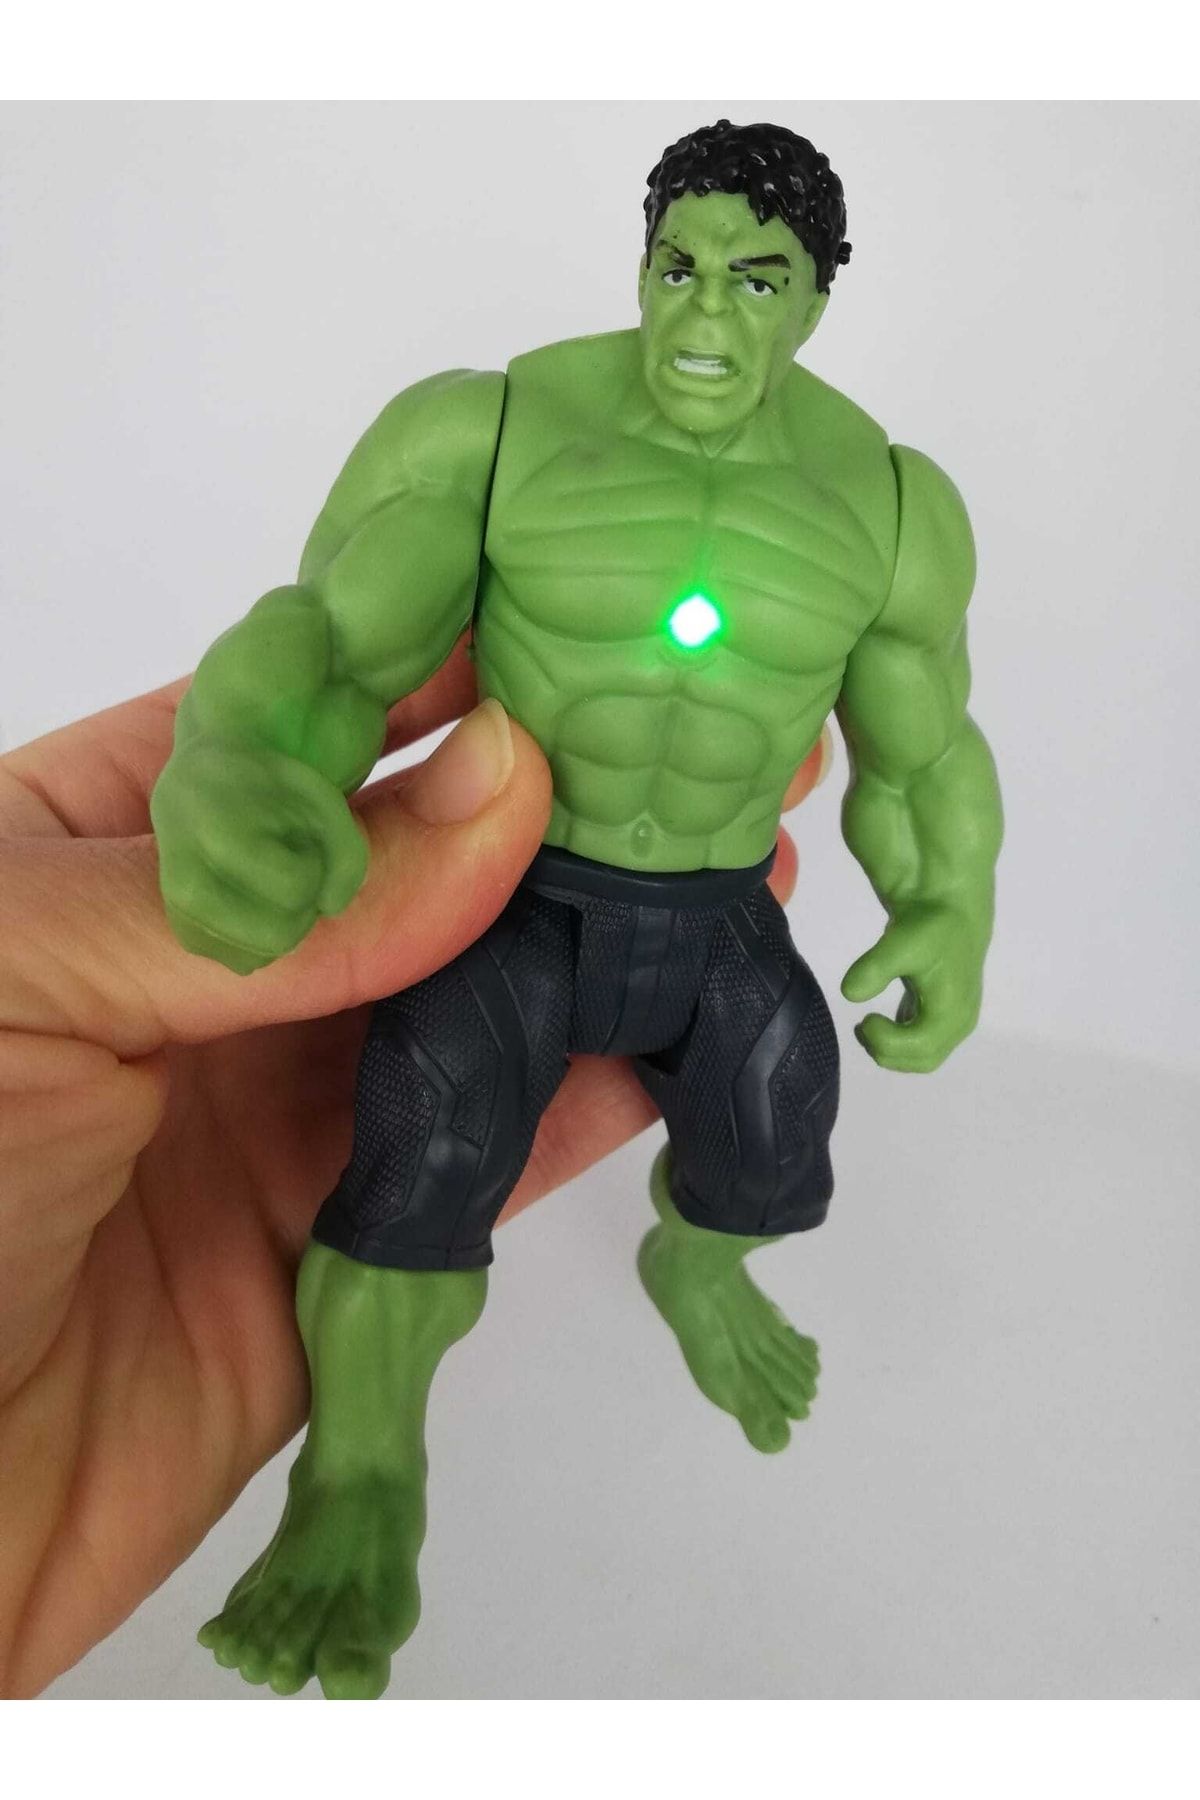 LRS STORE Marvel Avangers Işıklı Hulk Figür 14 Cm Kaliteli